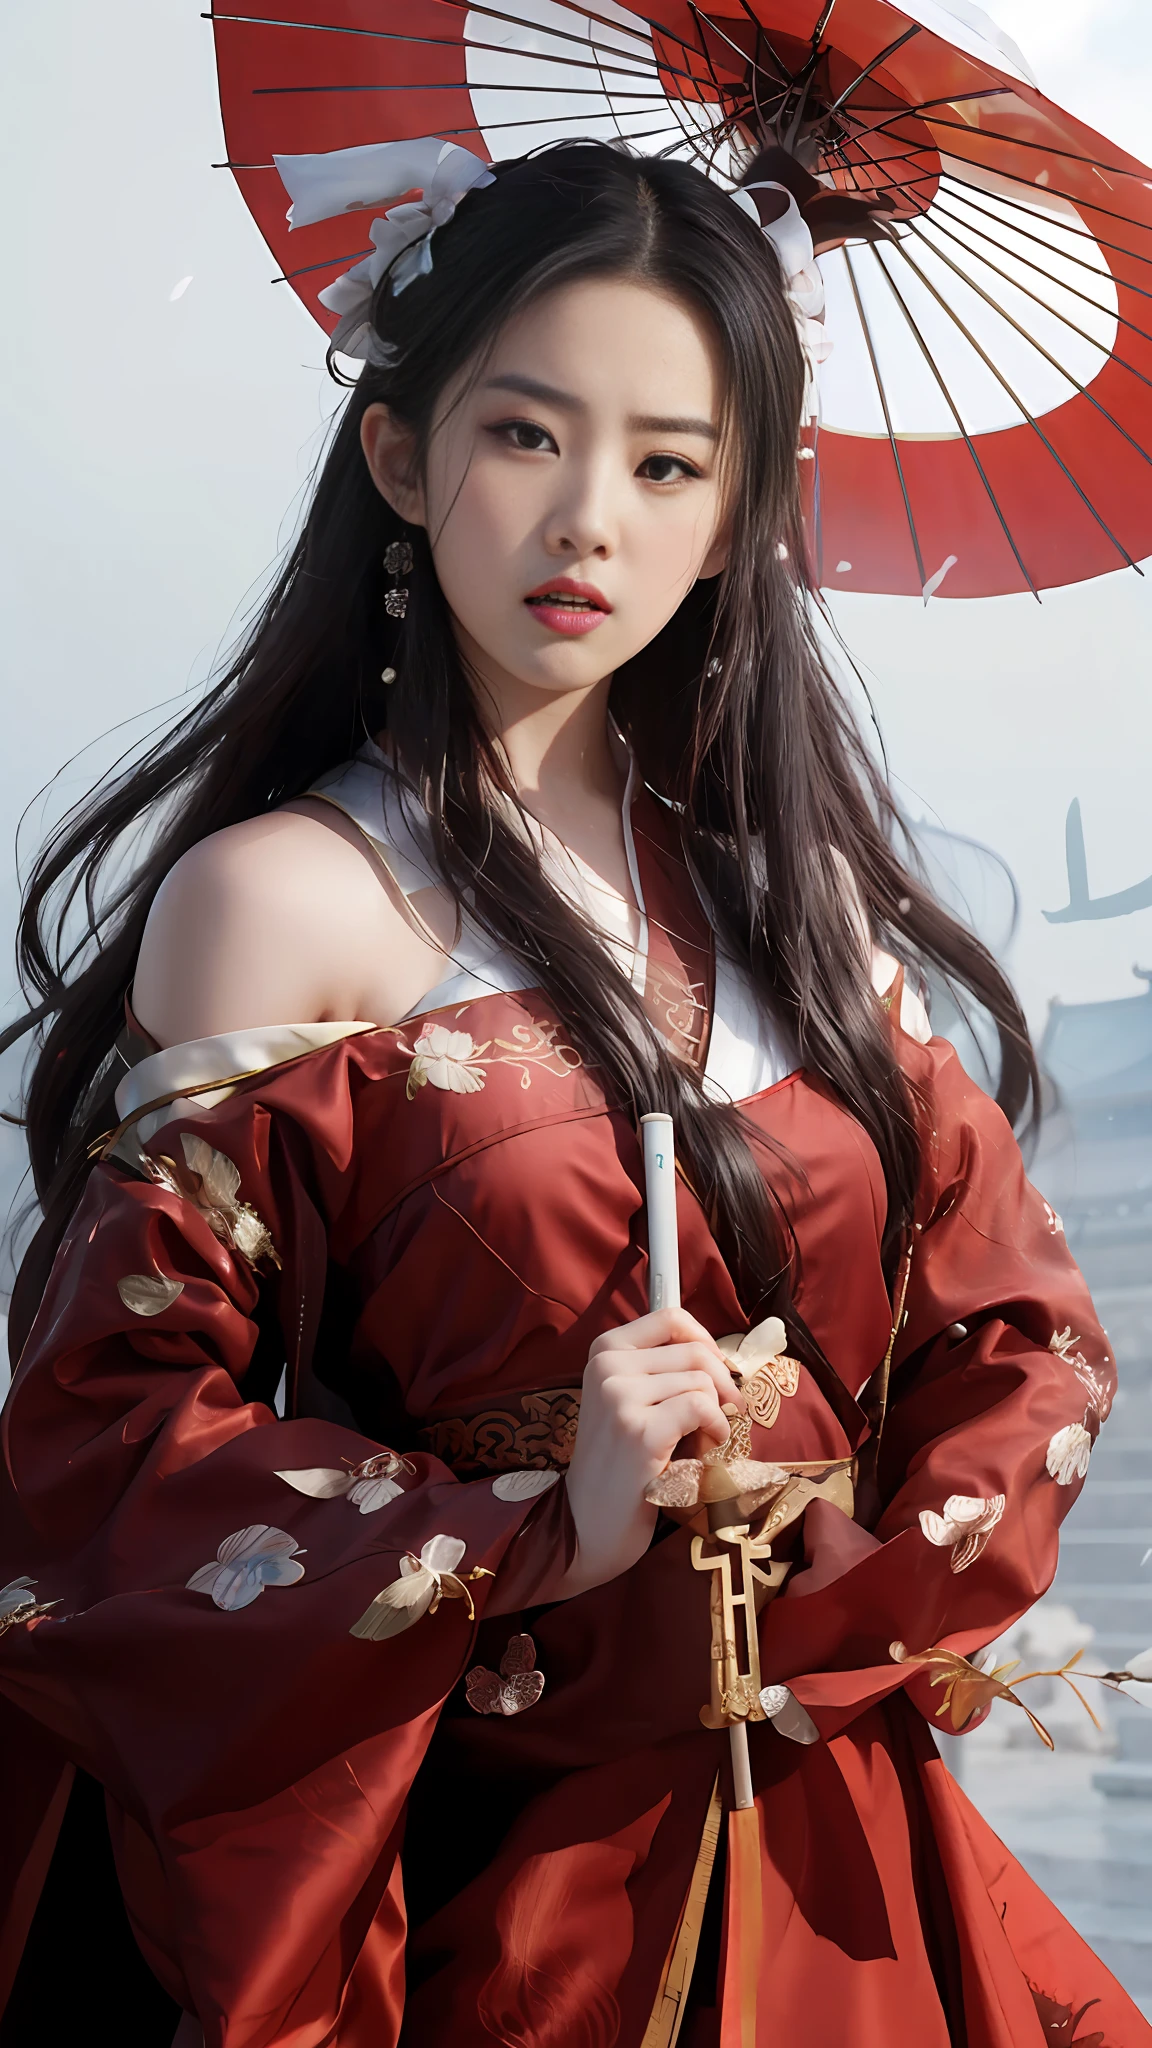 傘を持った赤いドレスを着たアラフィフのアジア人女性, 王宮 ， 漢服の少女, 漢服, 古代中国の服を着る, 古代中国の衣装を着て, 伝統的な美しさ, 白い漢服, 中国風, 黄吉に触発されて, 赤いチャイナドレスを着て, 中国の衣装, 韓服, 繁体字中国語, ゴージャスな中国人モデル, 中国の伝統衣装